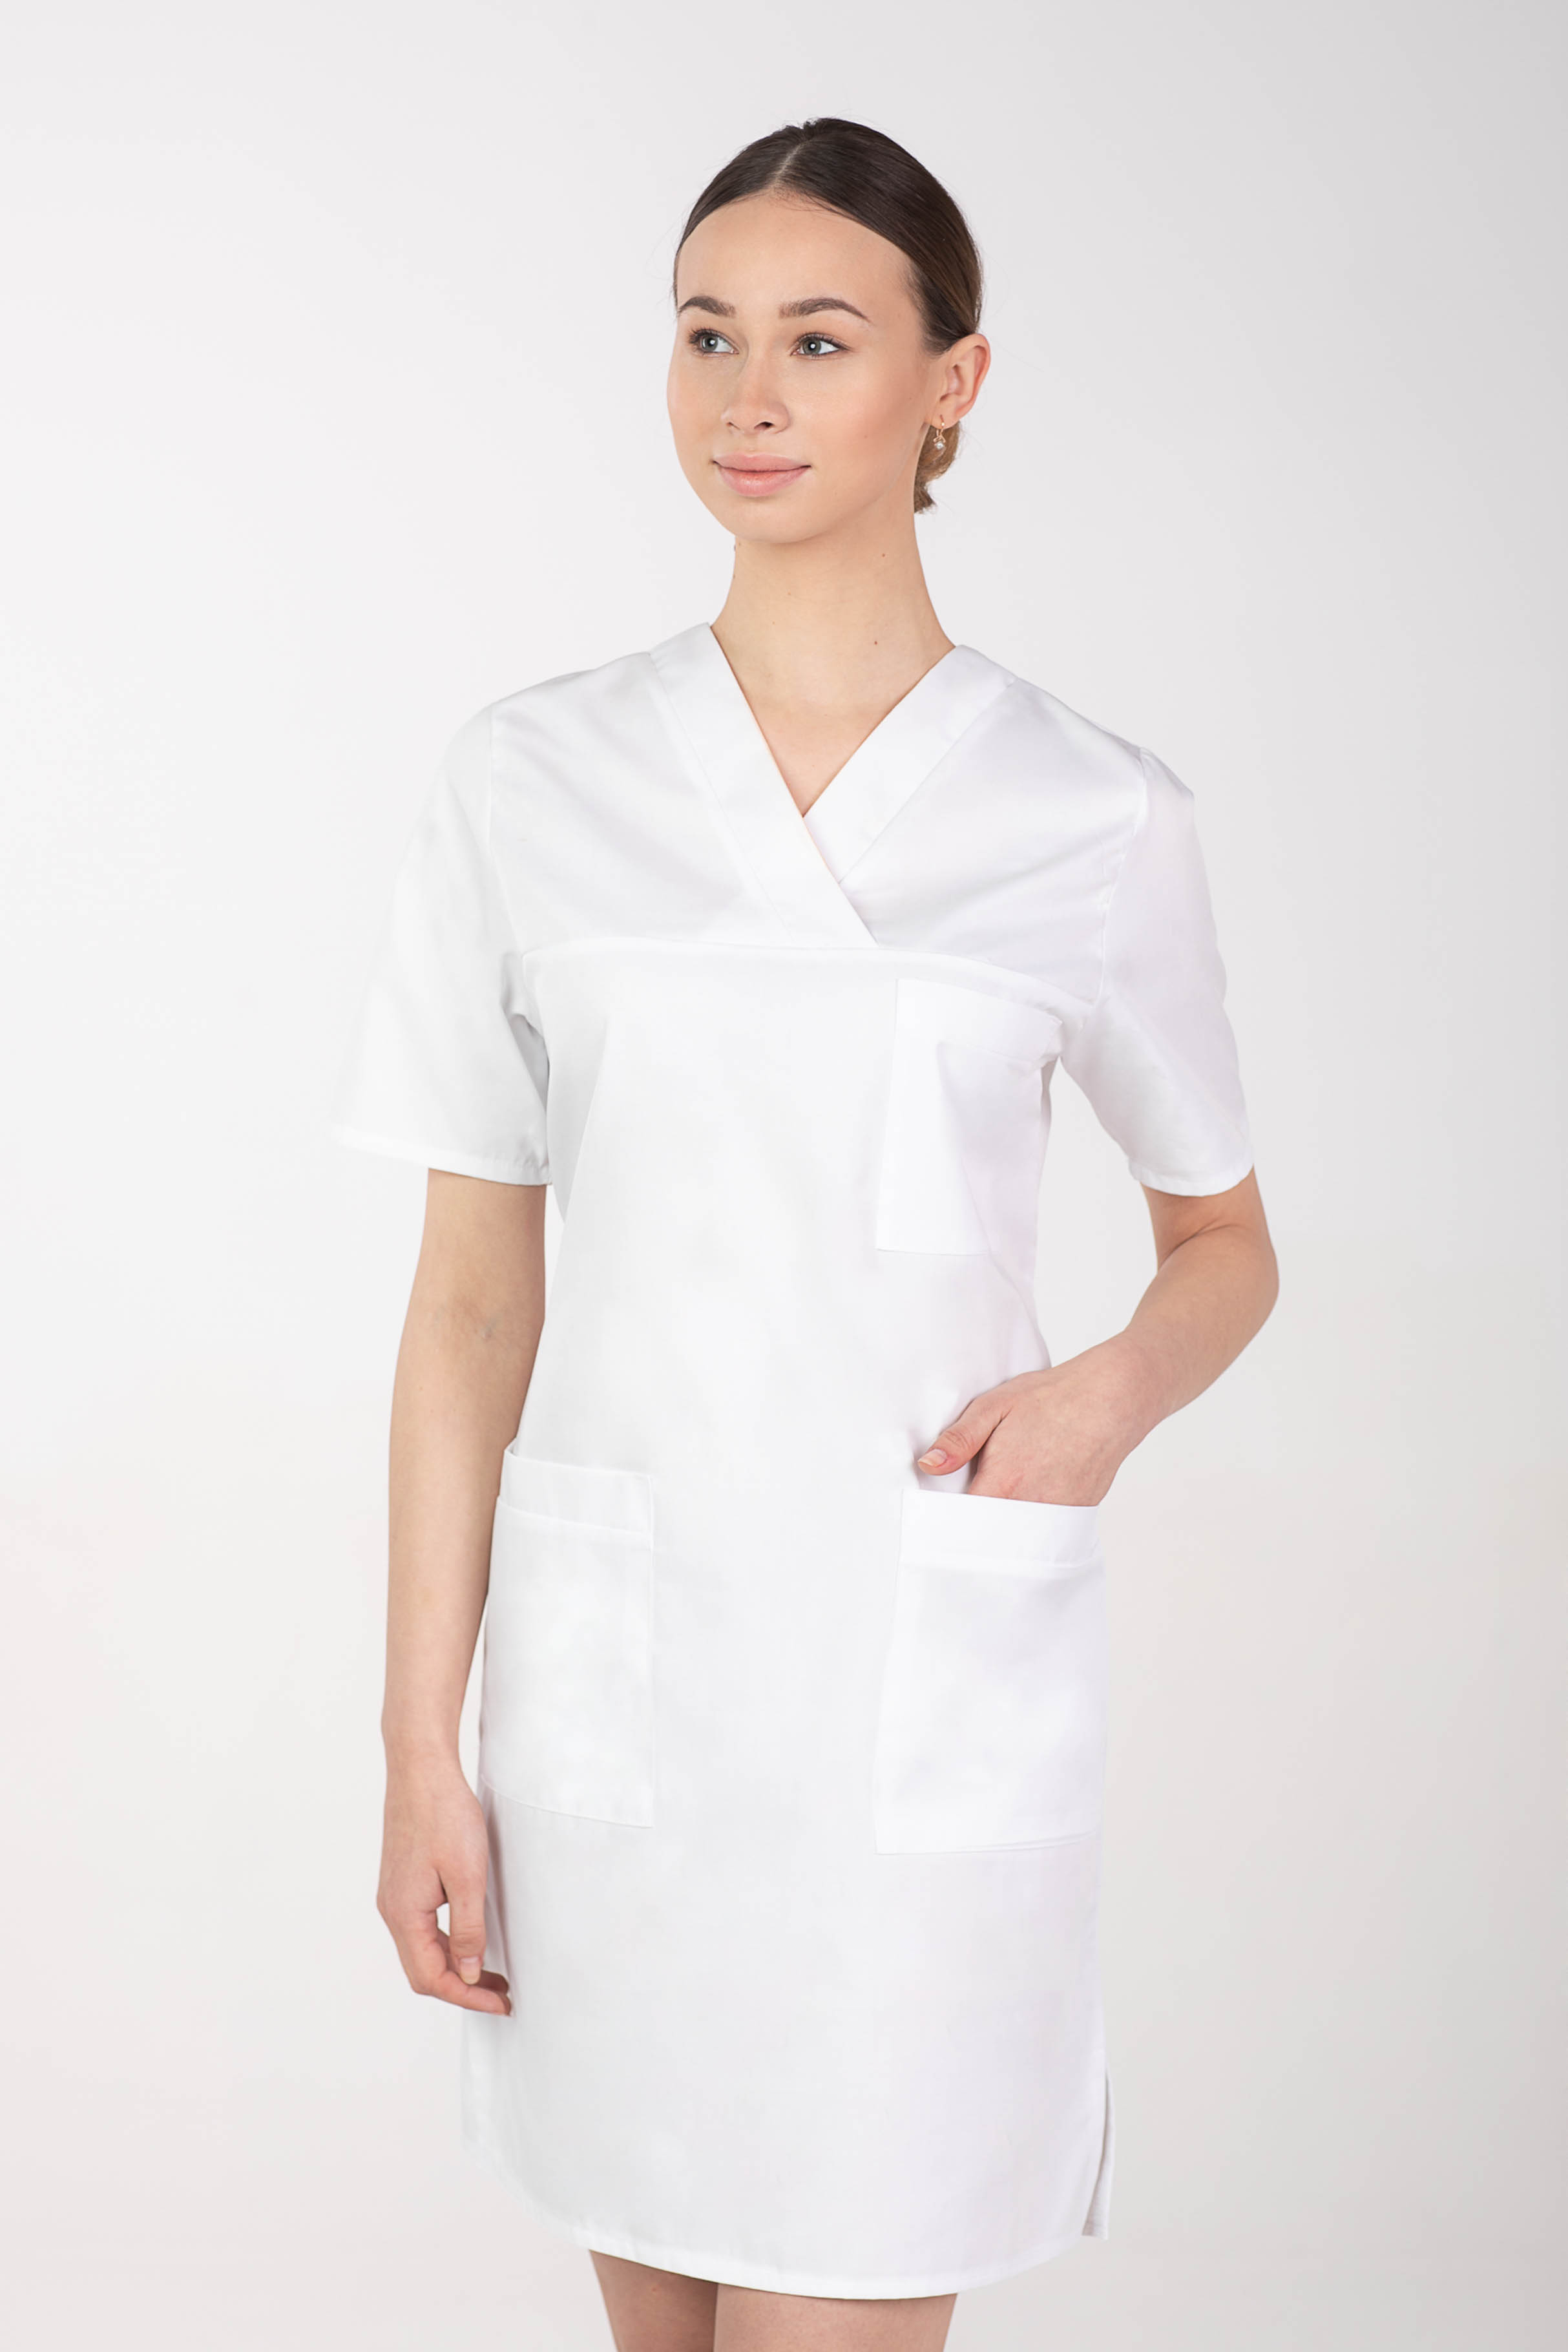 Dámske zdravotnícke šaty M-076F, biela